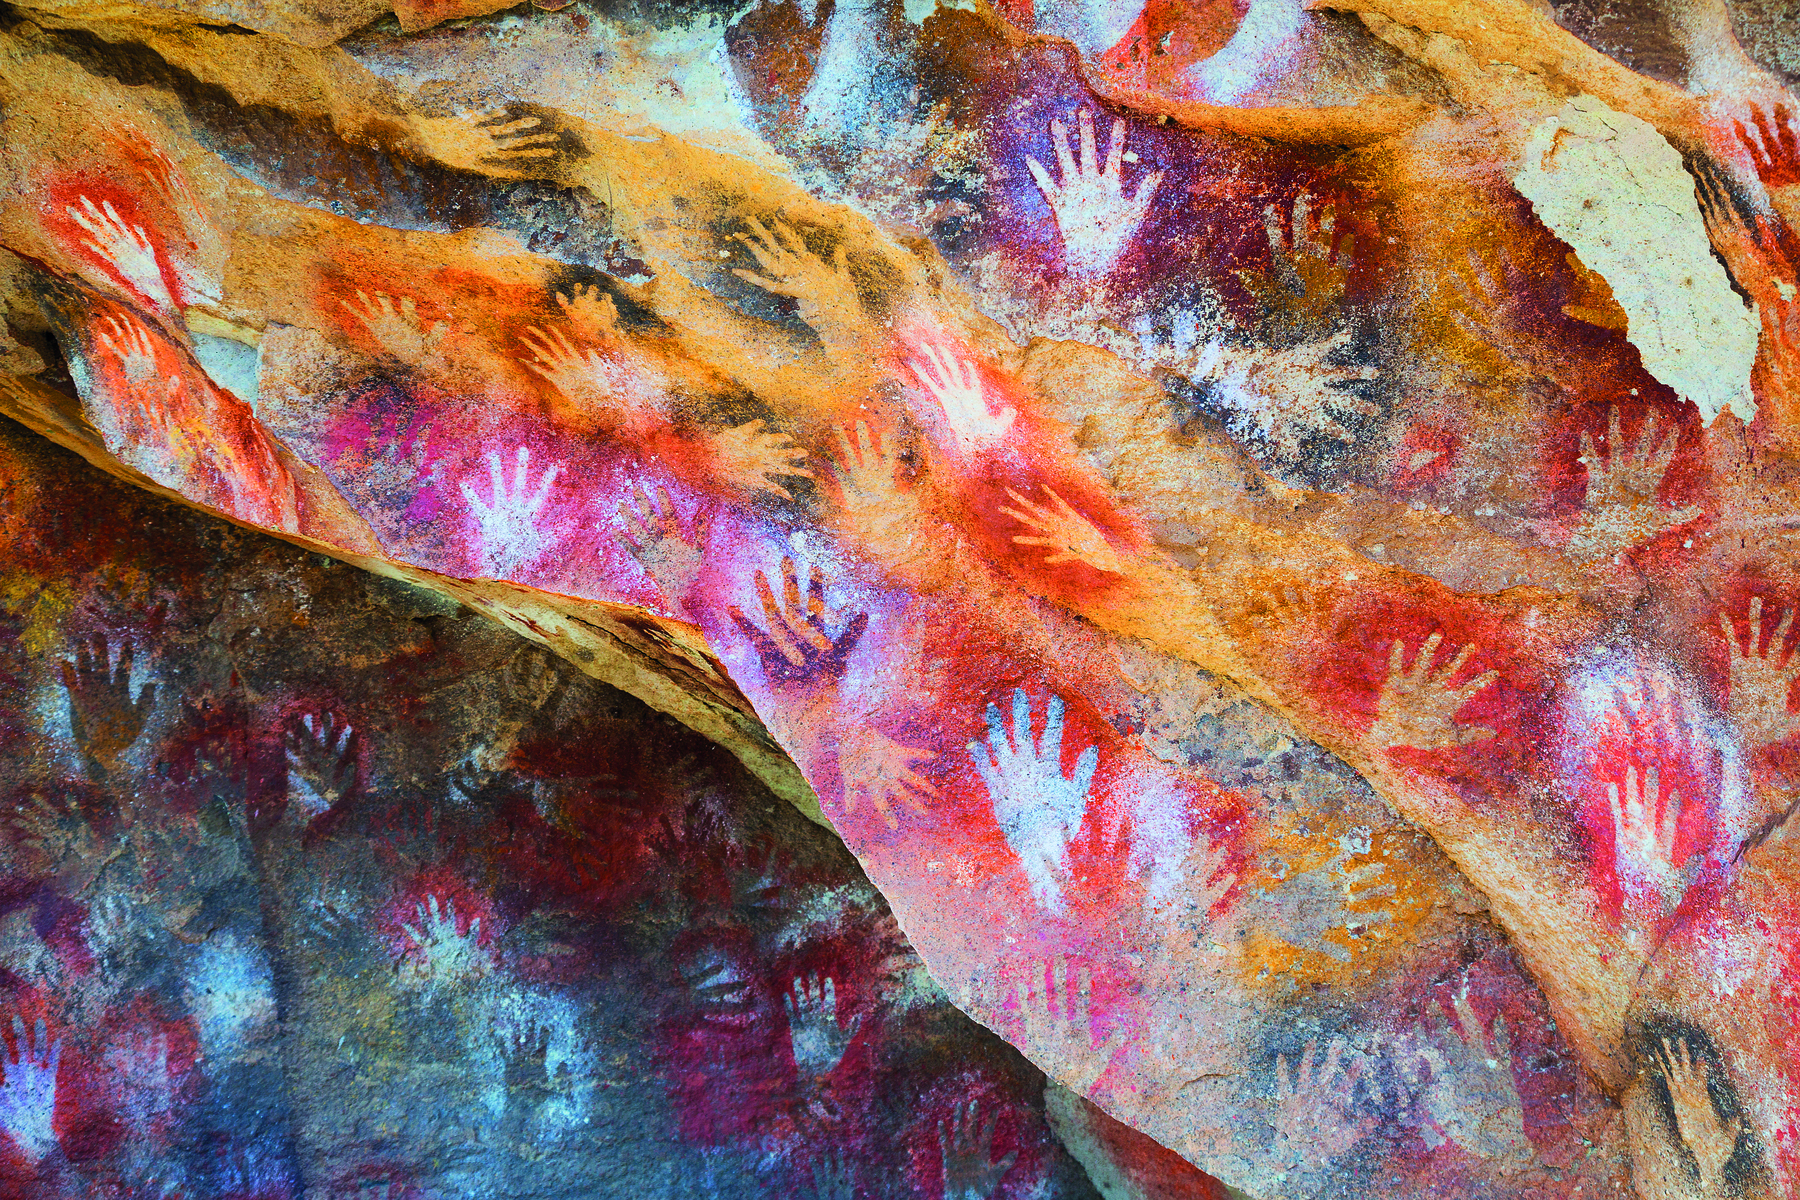 Fotografia. Contornos de diversas mãos, em tons de vermelho, amarelo, laranja, preto e branco, sobre as paredes de uma gruta.